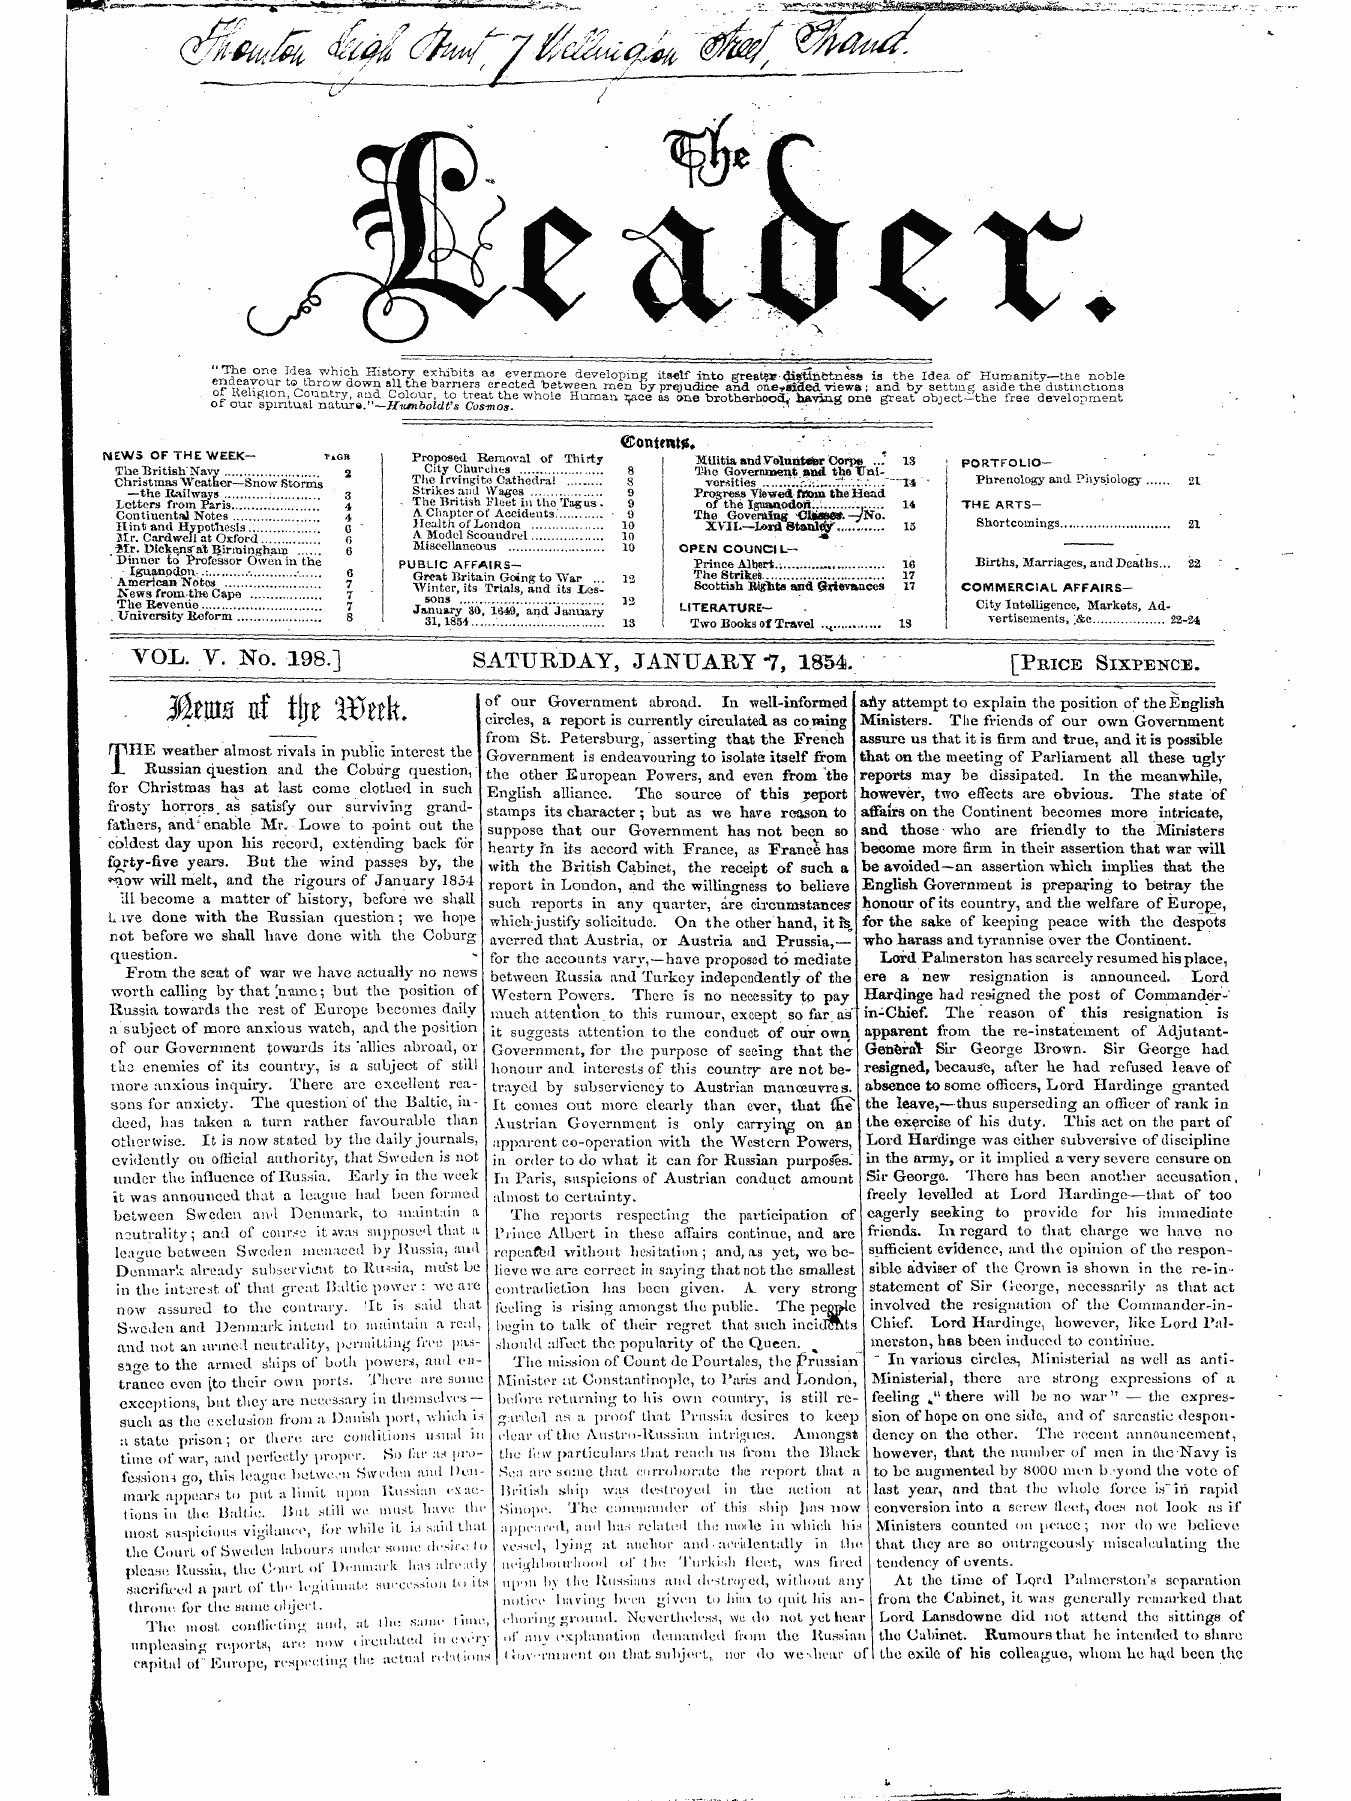 Leader (1850-1860): jS F Y, 1st edition - 10l~Frxt\$I Ttf Fltd- '3¥V L&Gt;^L^ Jrlx ^Y^ 1x1 Iijv ^Xjlclix*